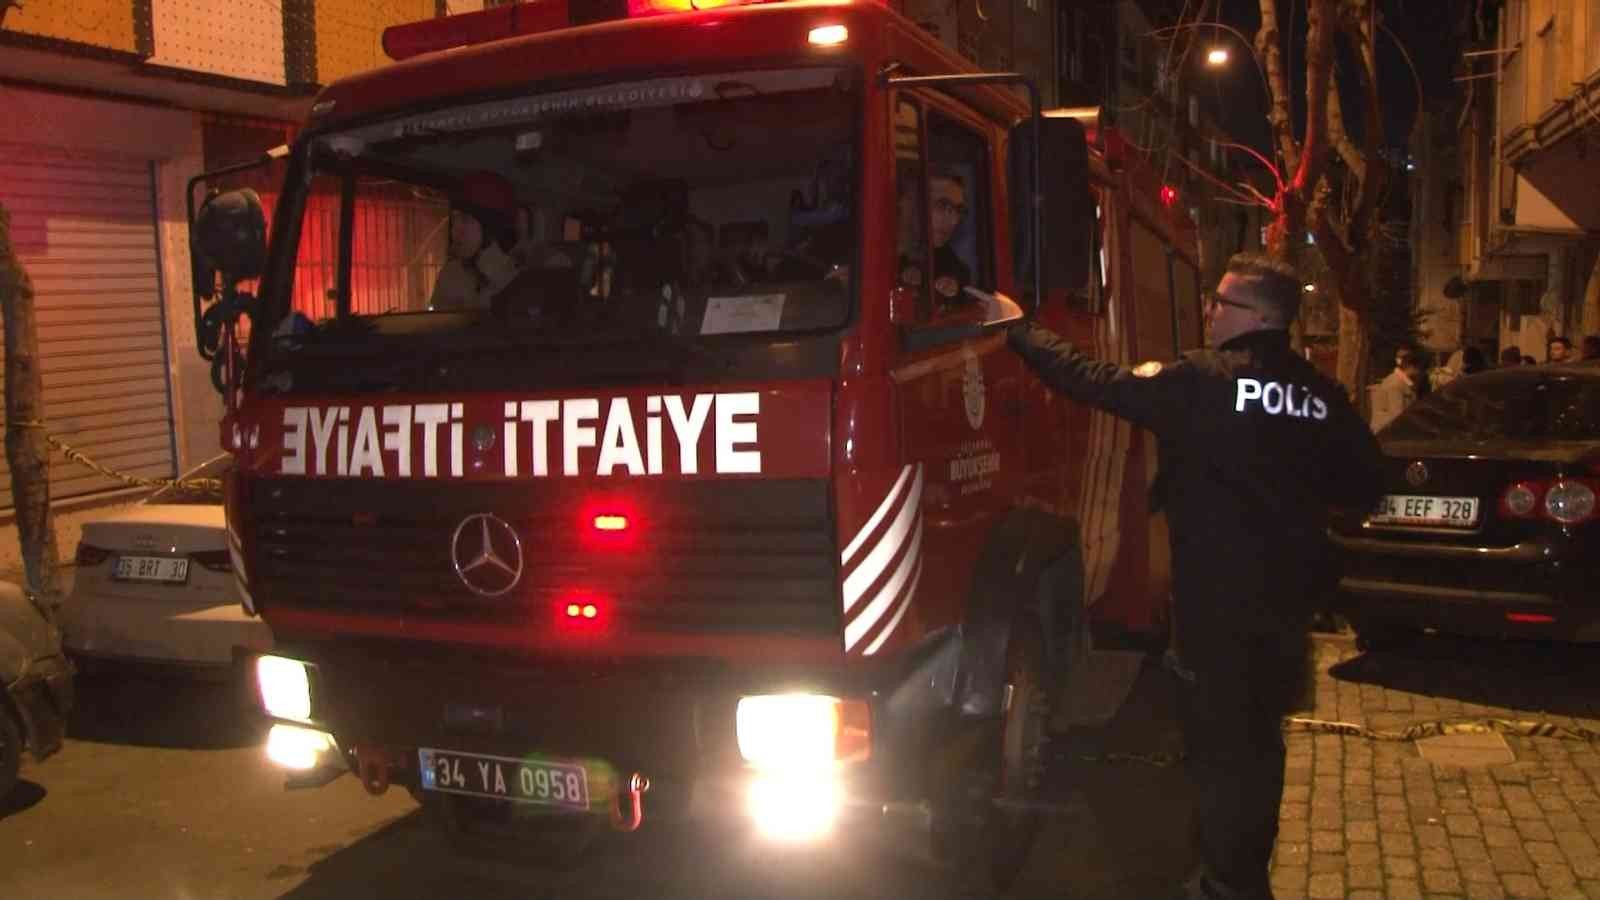 Esenler’de korkutan yangın #istanbul